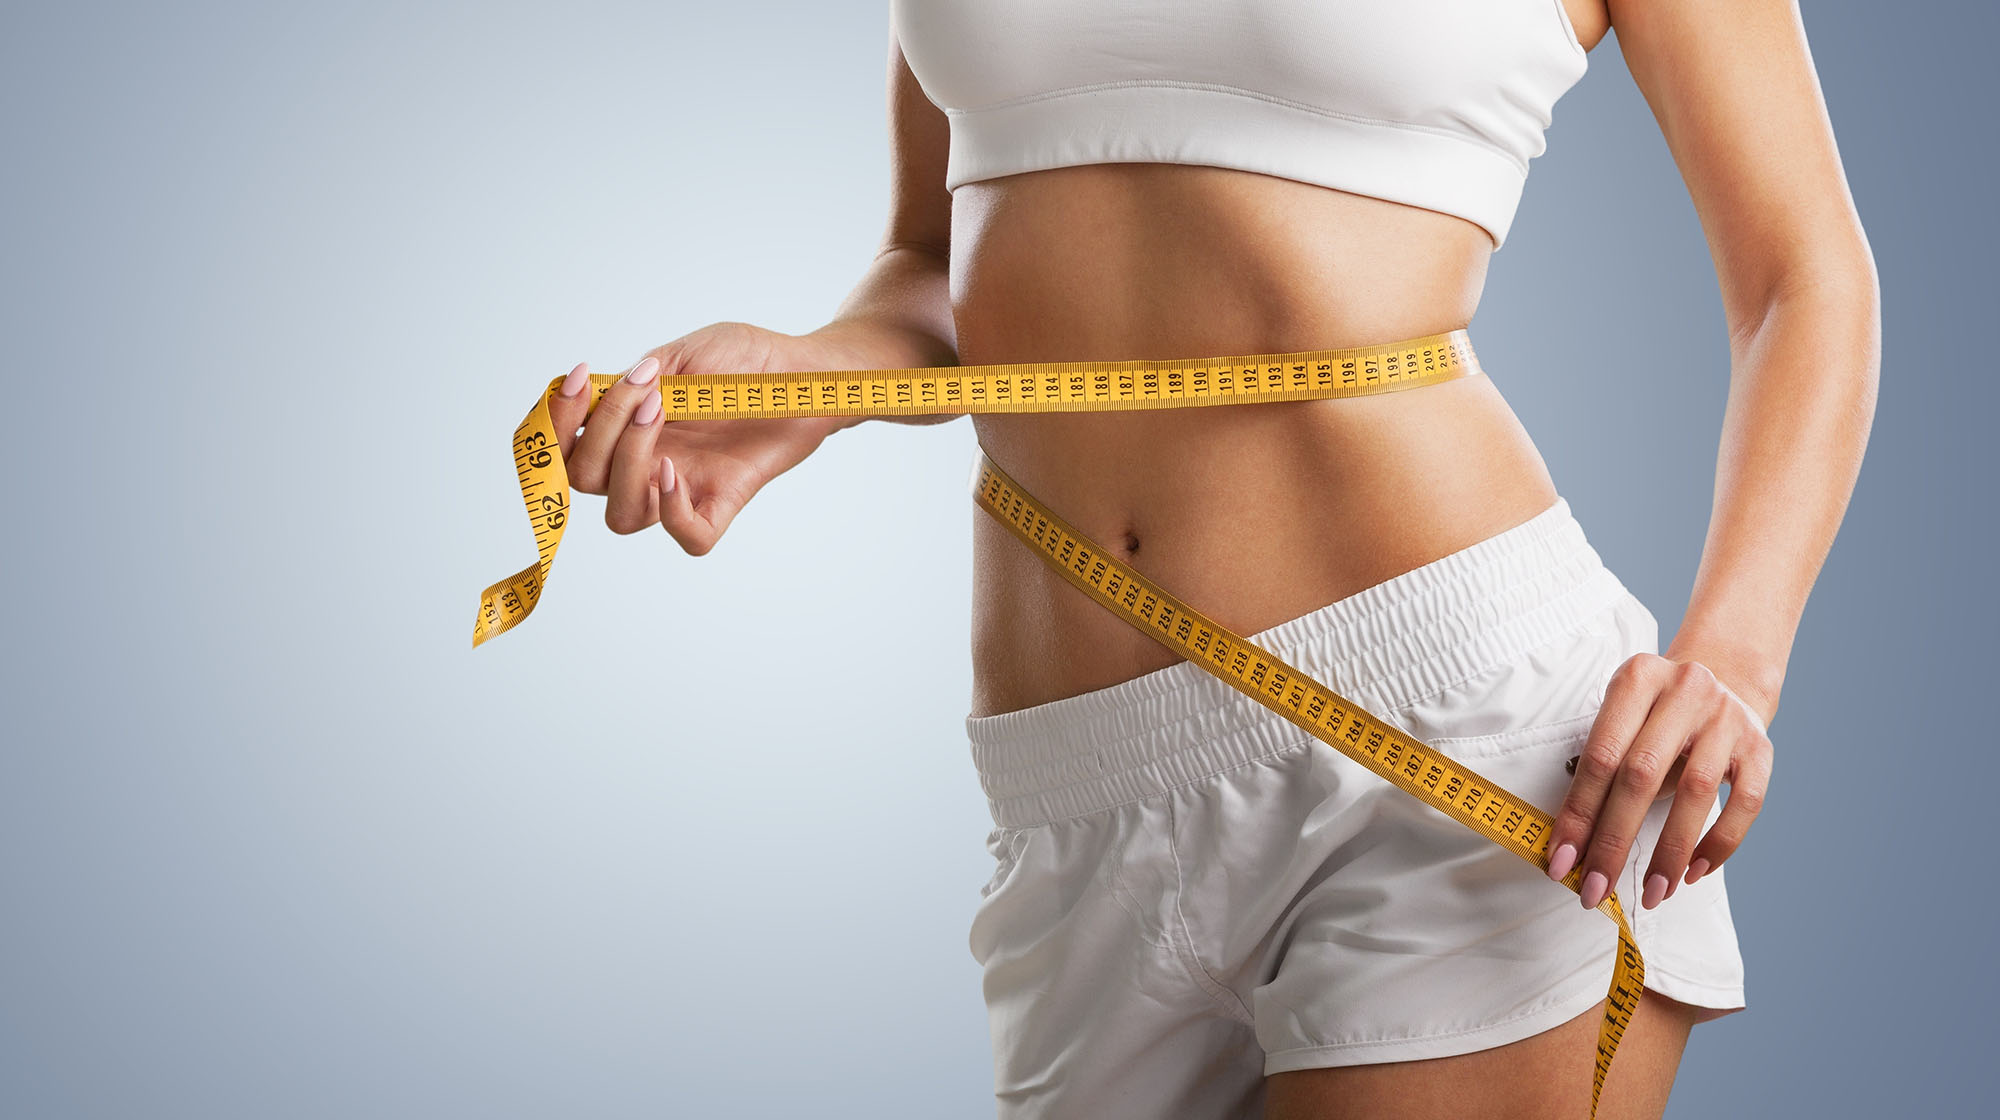 Quema grasa abdominal en 15 minutos - BEST DIET